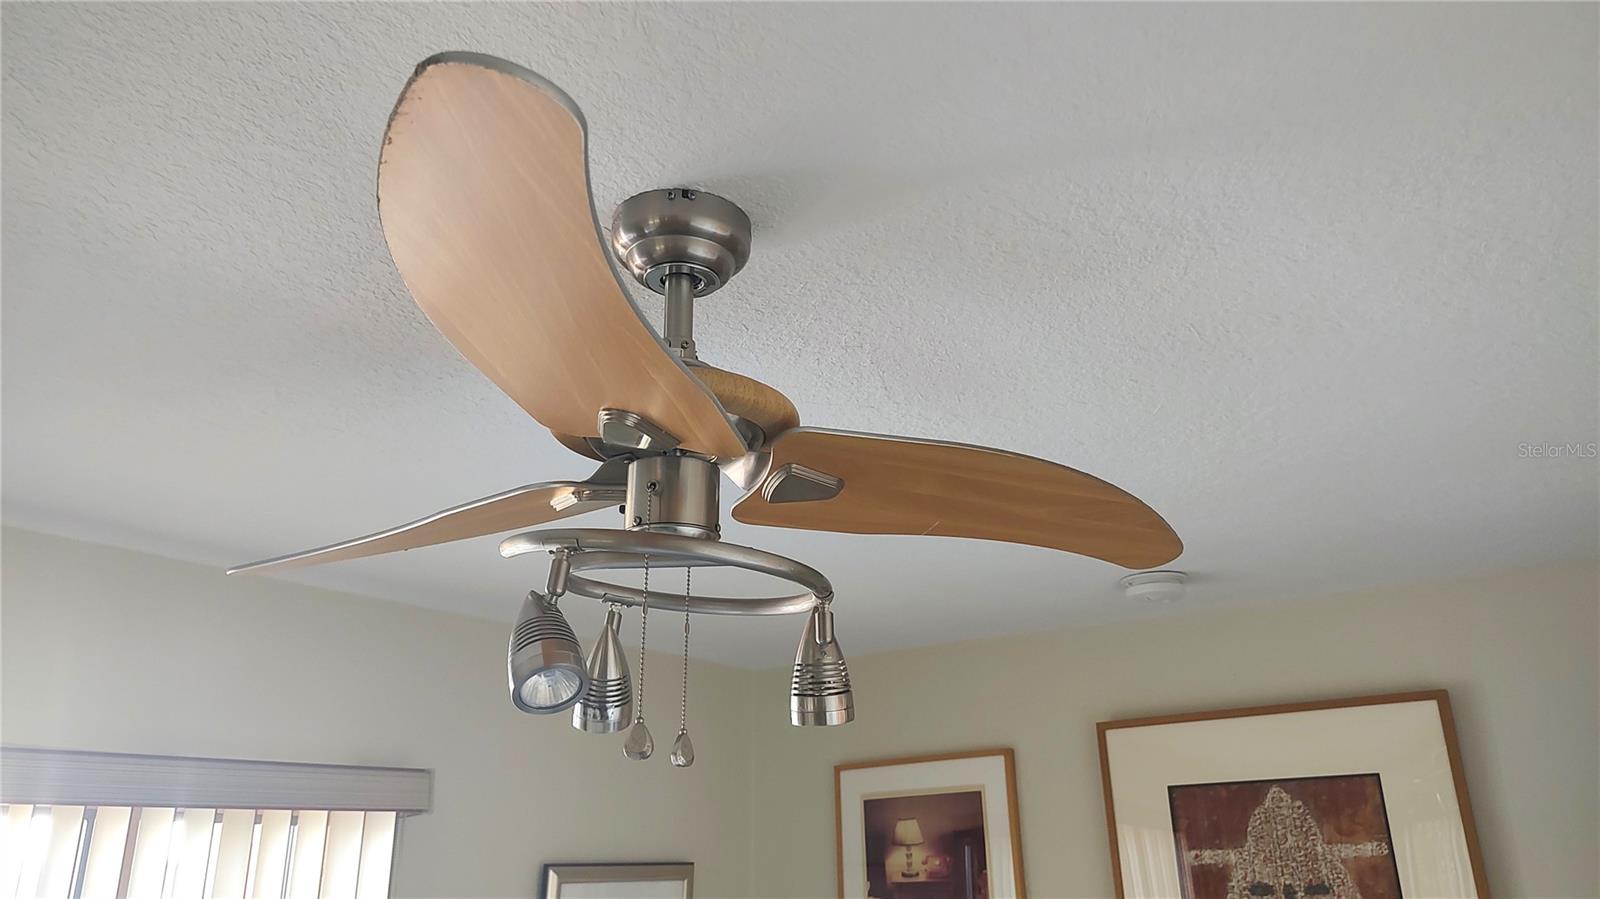 Unique fan/light in guest bedroom.